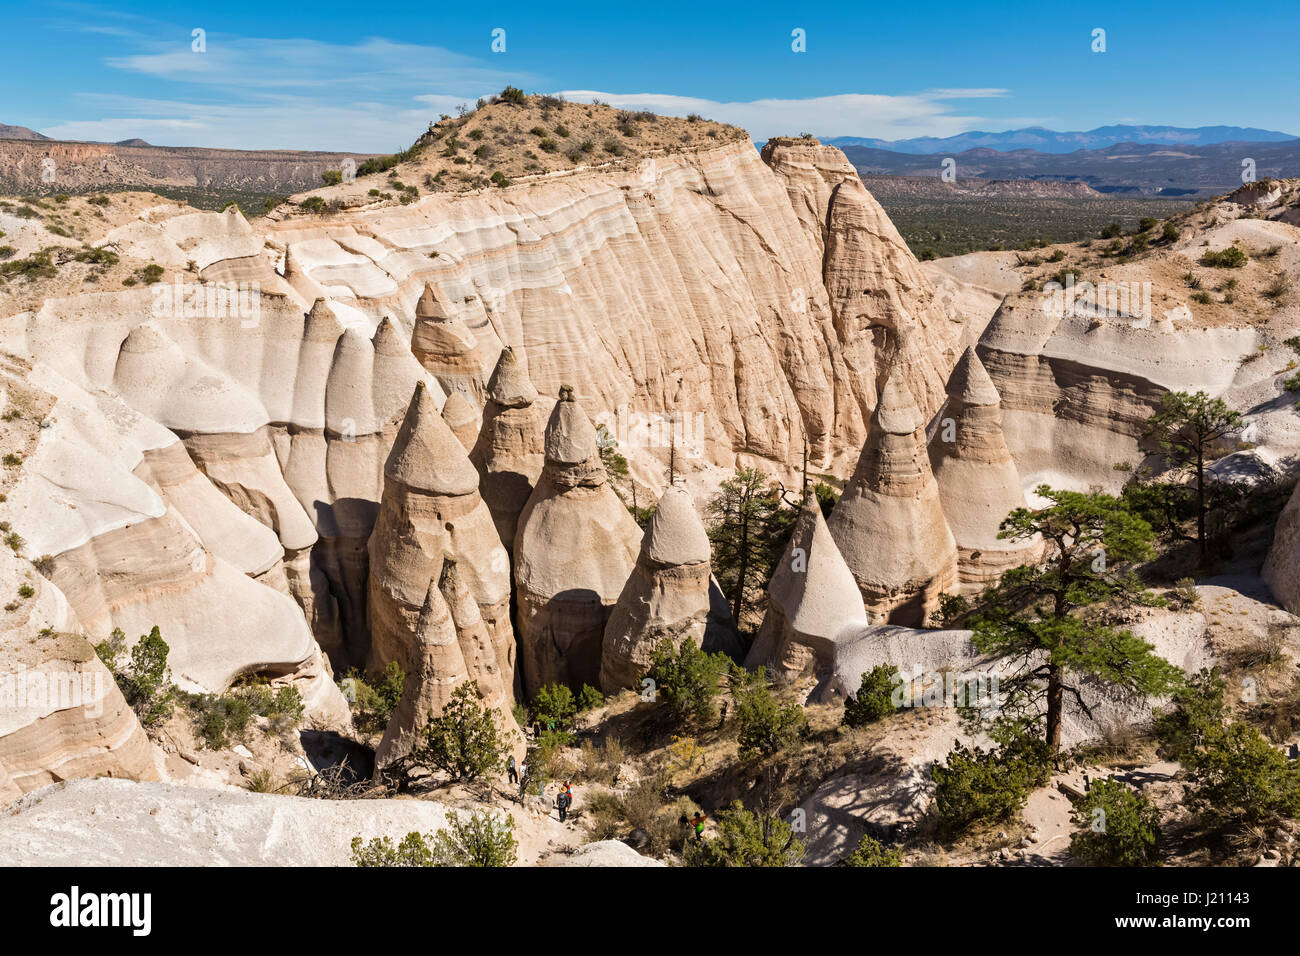 Stati Uniti d'America, Nuovo Messico, Pajarito Plateau, Sandoval County, Kasha-Katuwe tenda Rocks National Monument, vista della vallata desertica con bizzarre formazioni rocciose Foto Stock